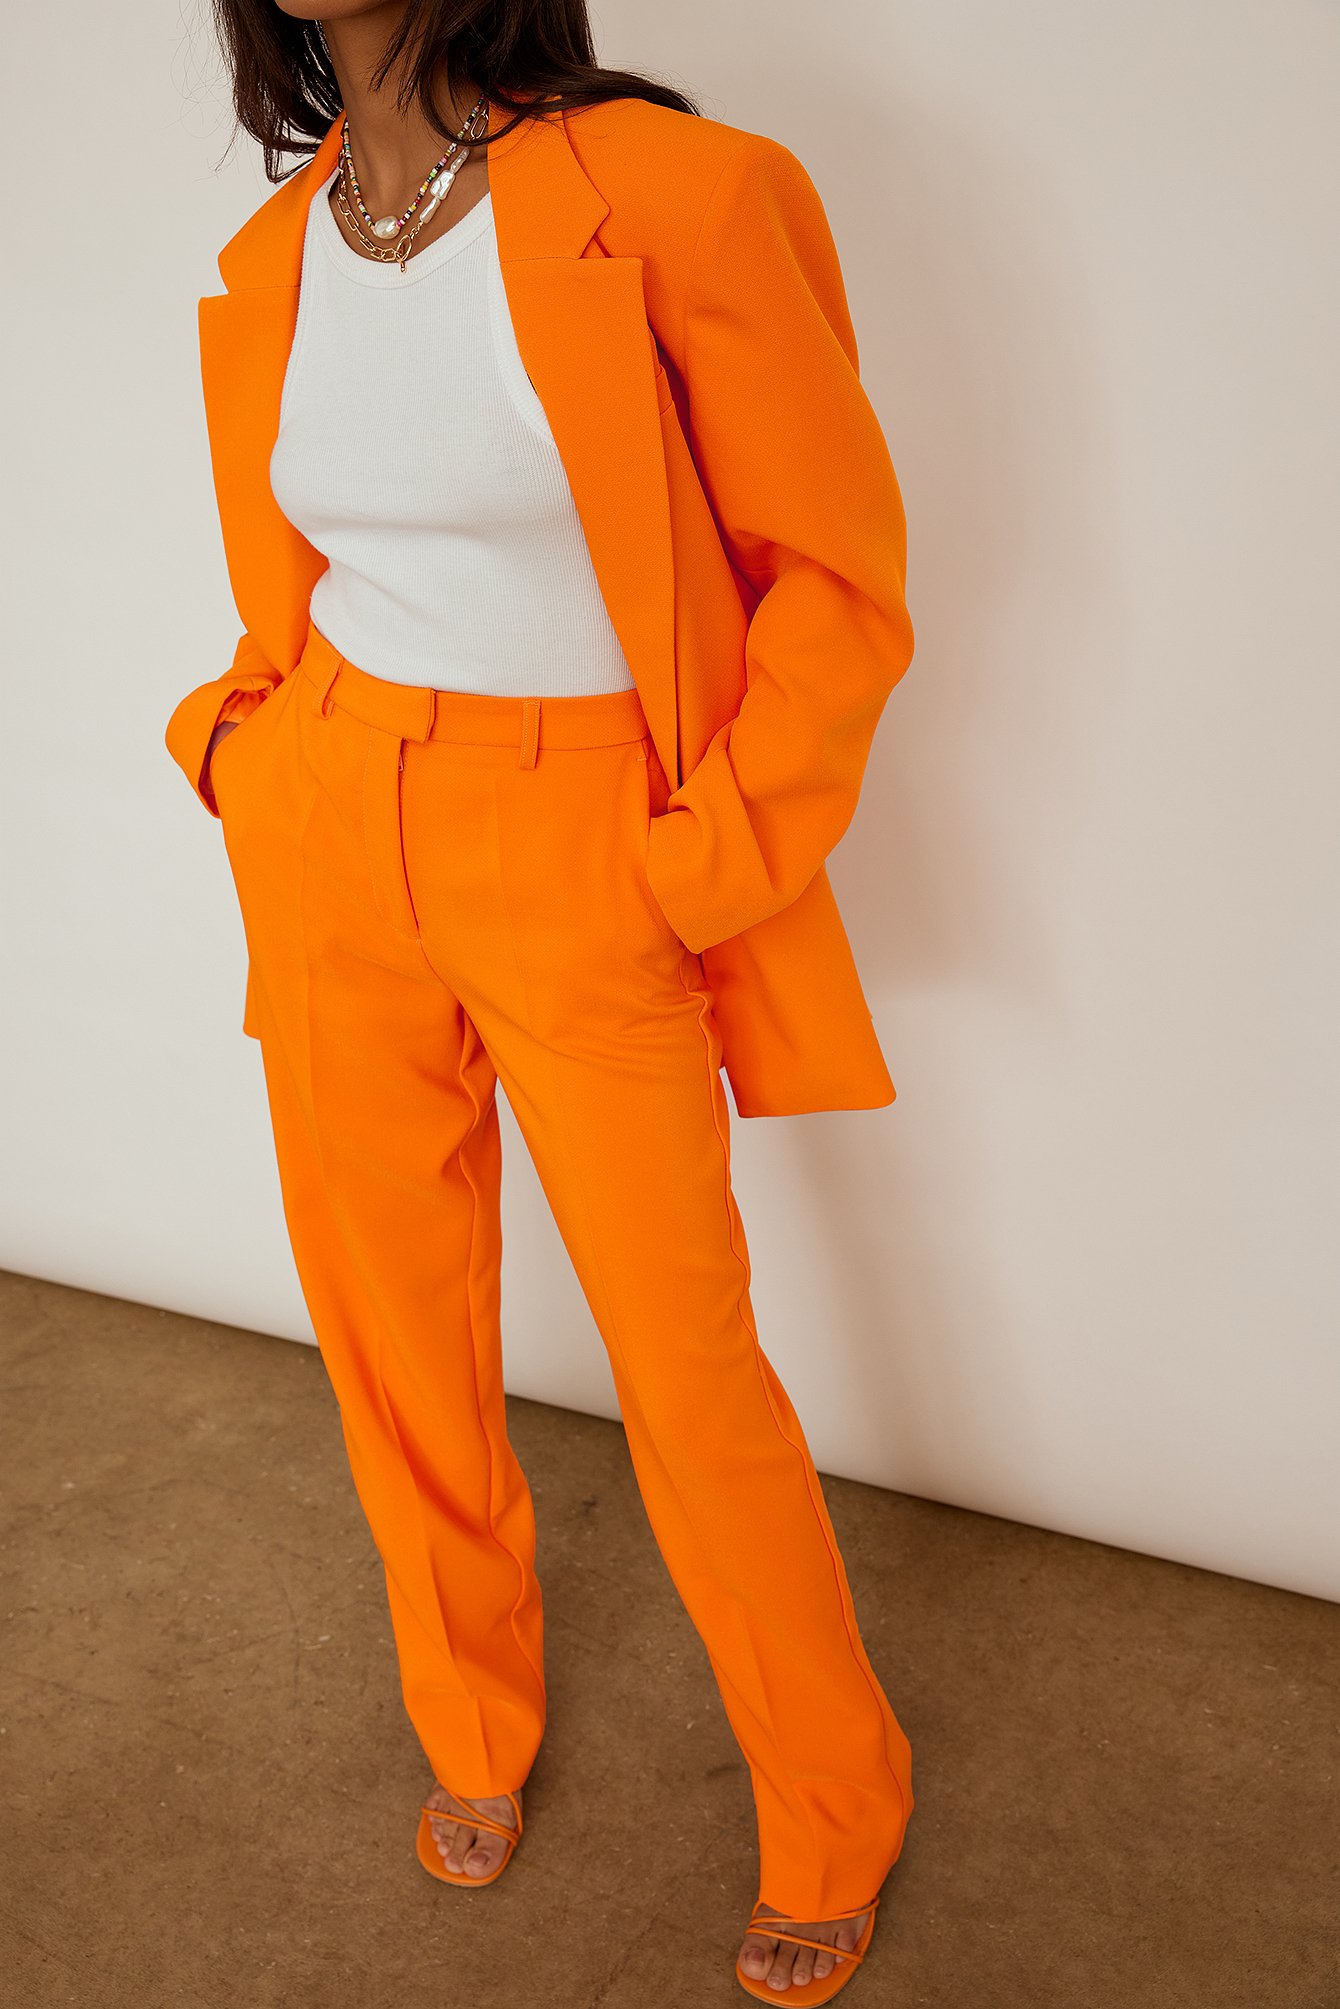 Bright Orange Resirkulert dressbukse med rette bein